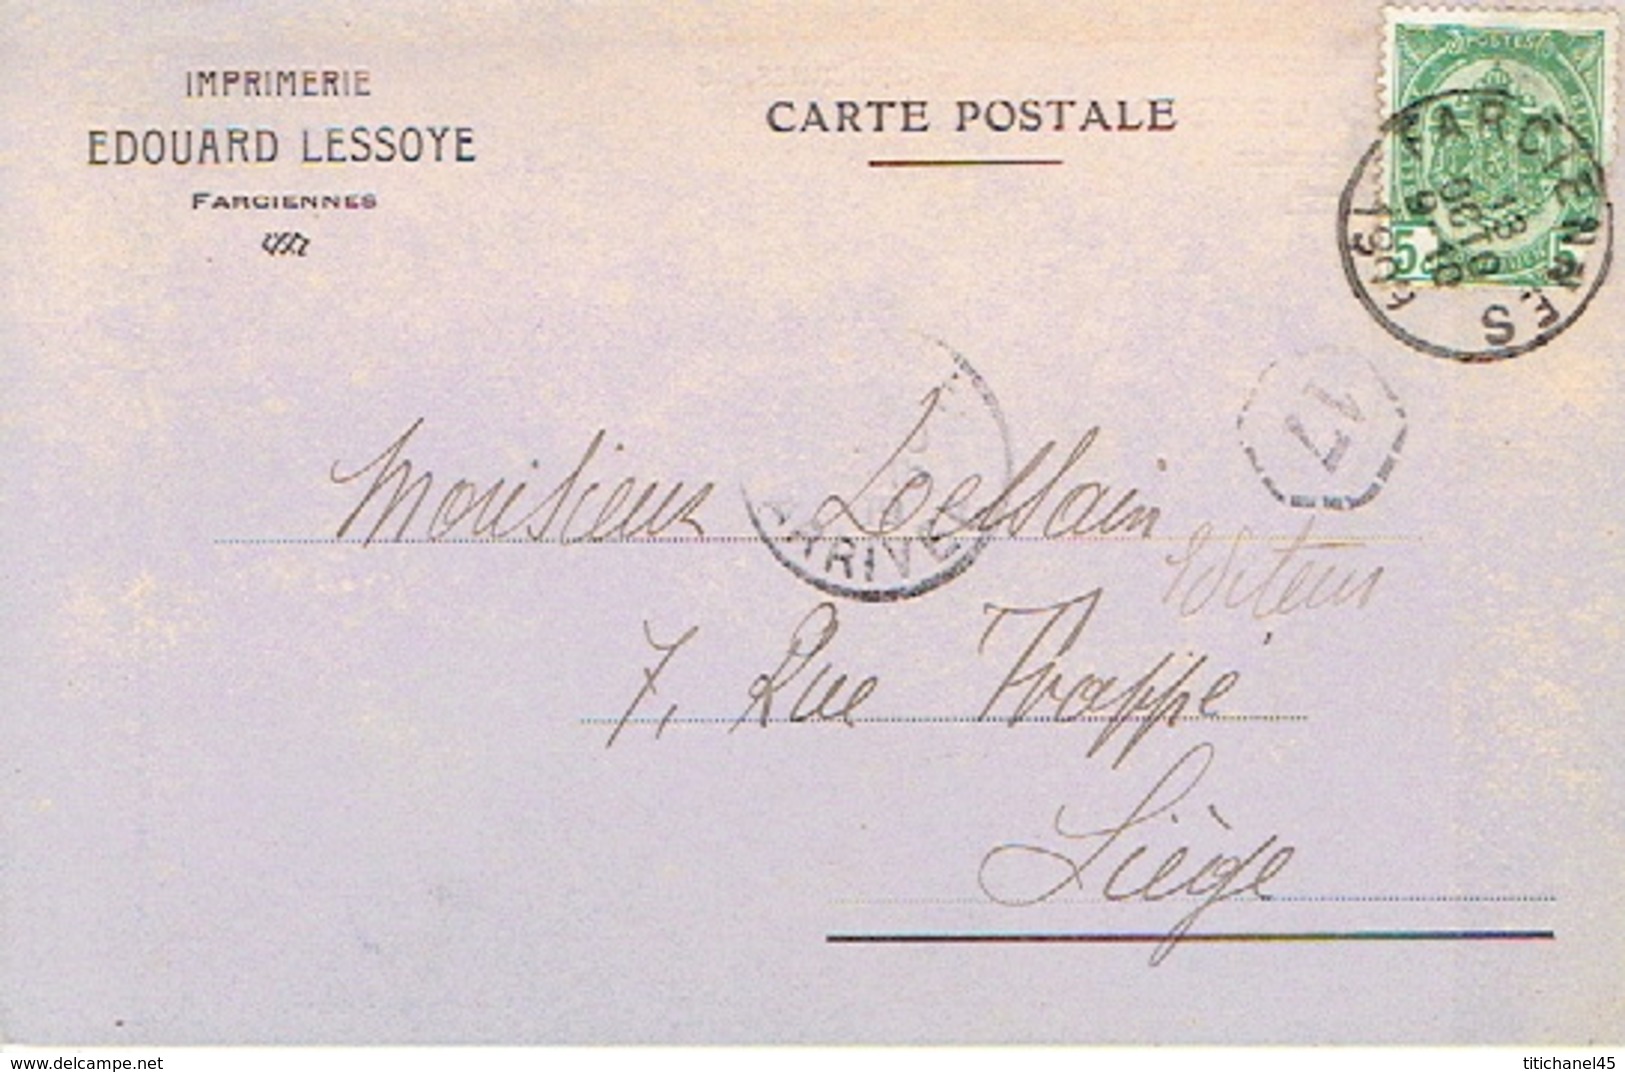 Carte Postale Publicitaire FARCIENNE 1909 - Entête Imprimerie EDOUARD LESSOYE à FARCIENNES - Farciennes